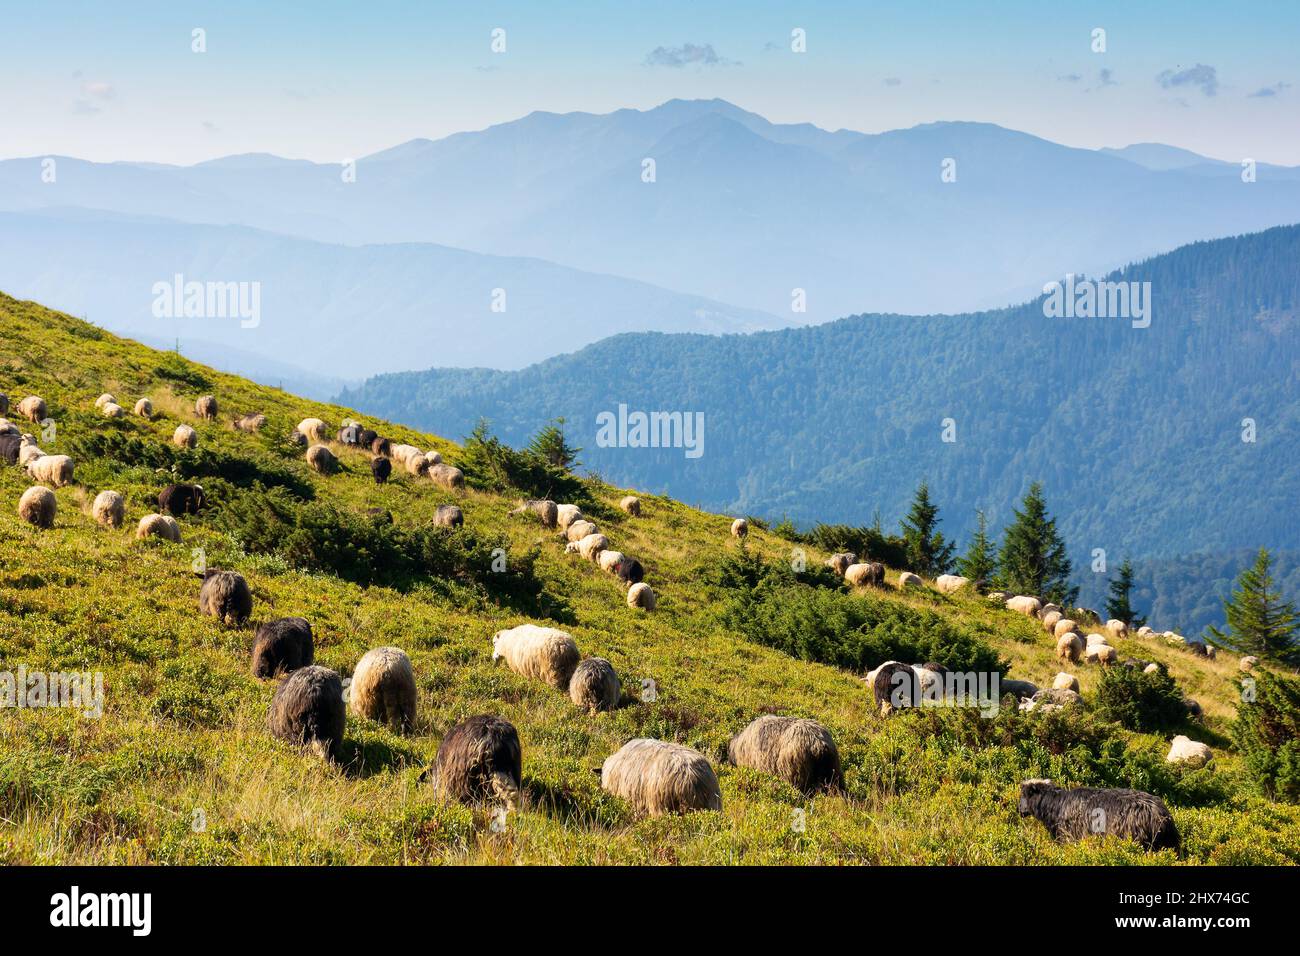 Schafe auf der Wiese in den Bergen. Tiere grasen grünes Gras. Landschaft der karpaten im Sommer. Grat in der Ferne. Helle sonnige Wea Stockfoto